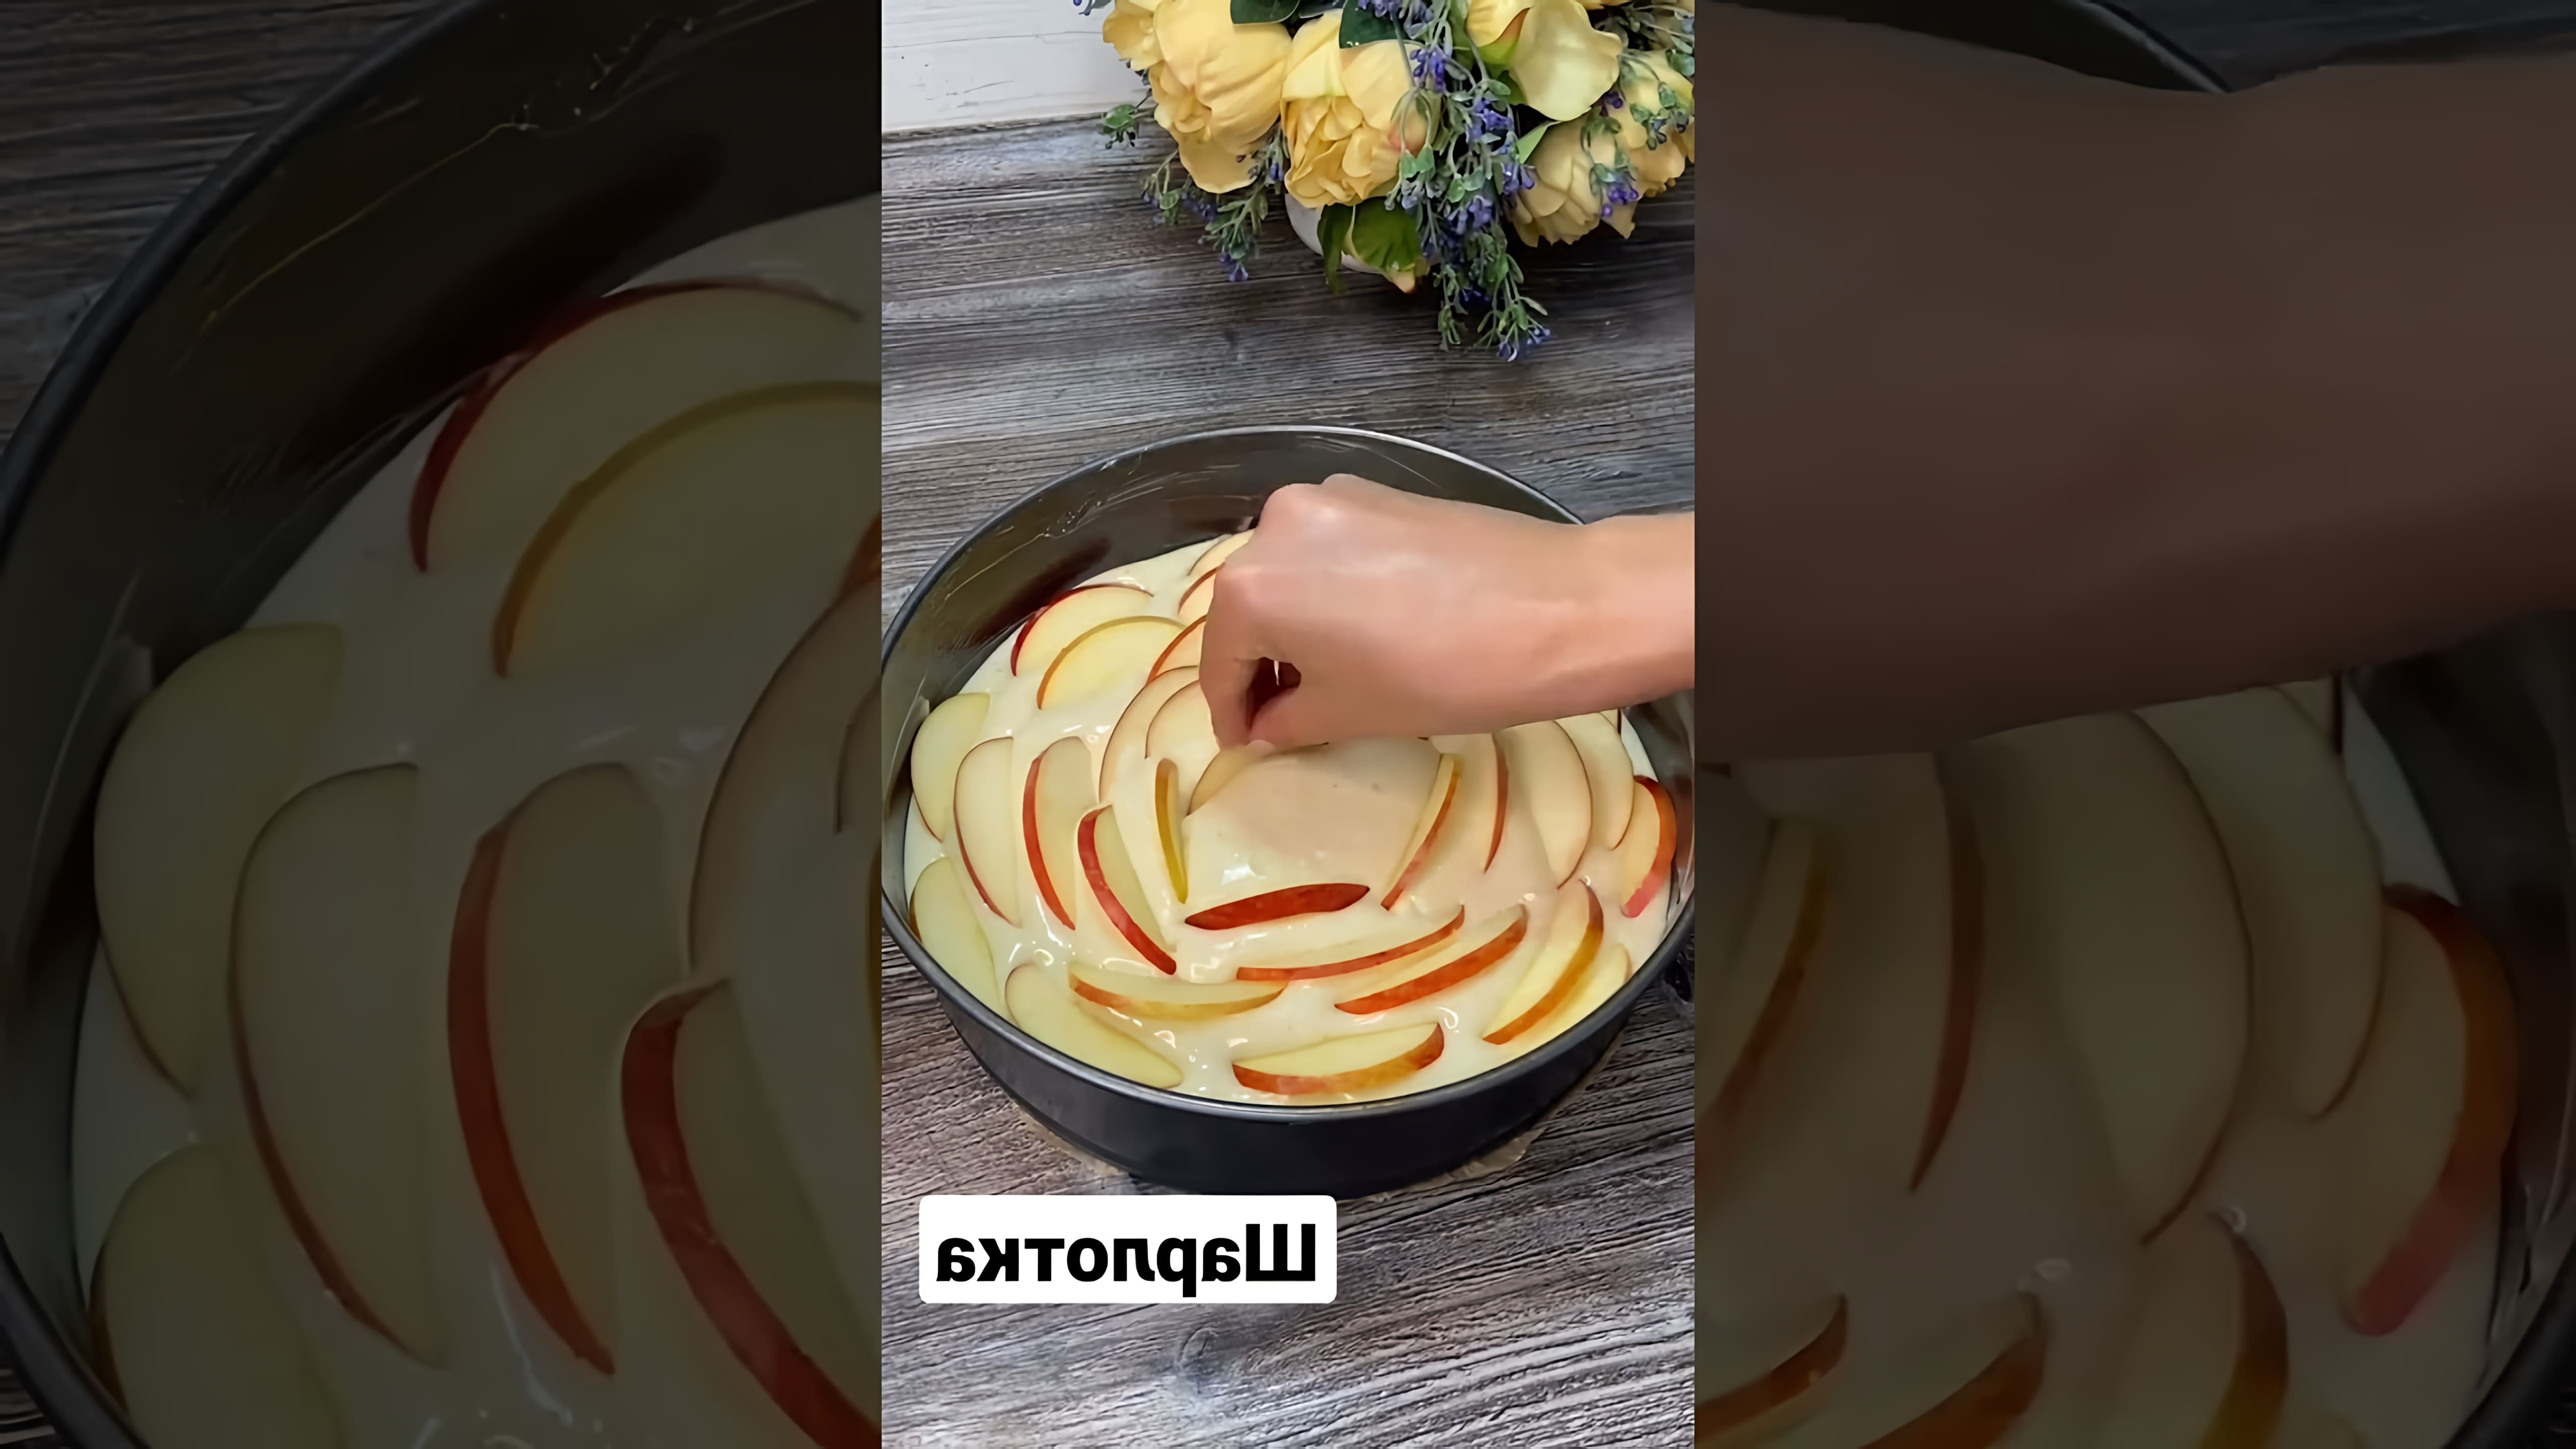 Видео посвящено приготовлению простого и пышного десерта "Шарлотта" дома с использованием обычных ингредиентов